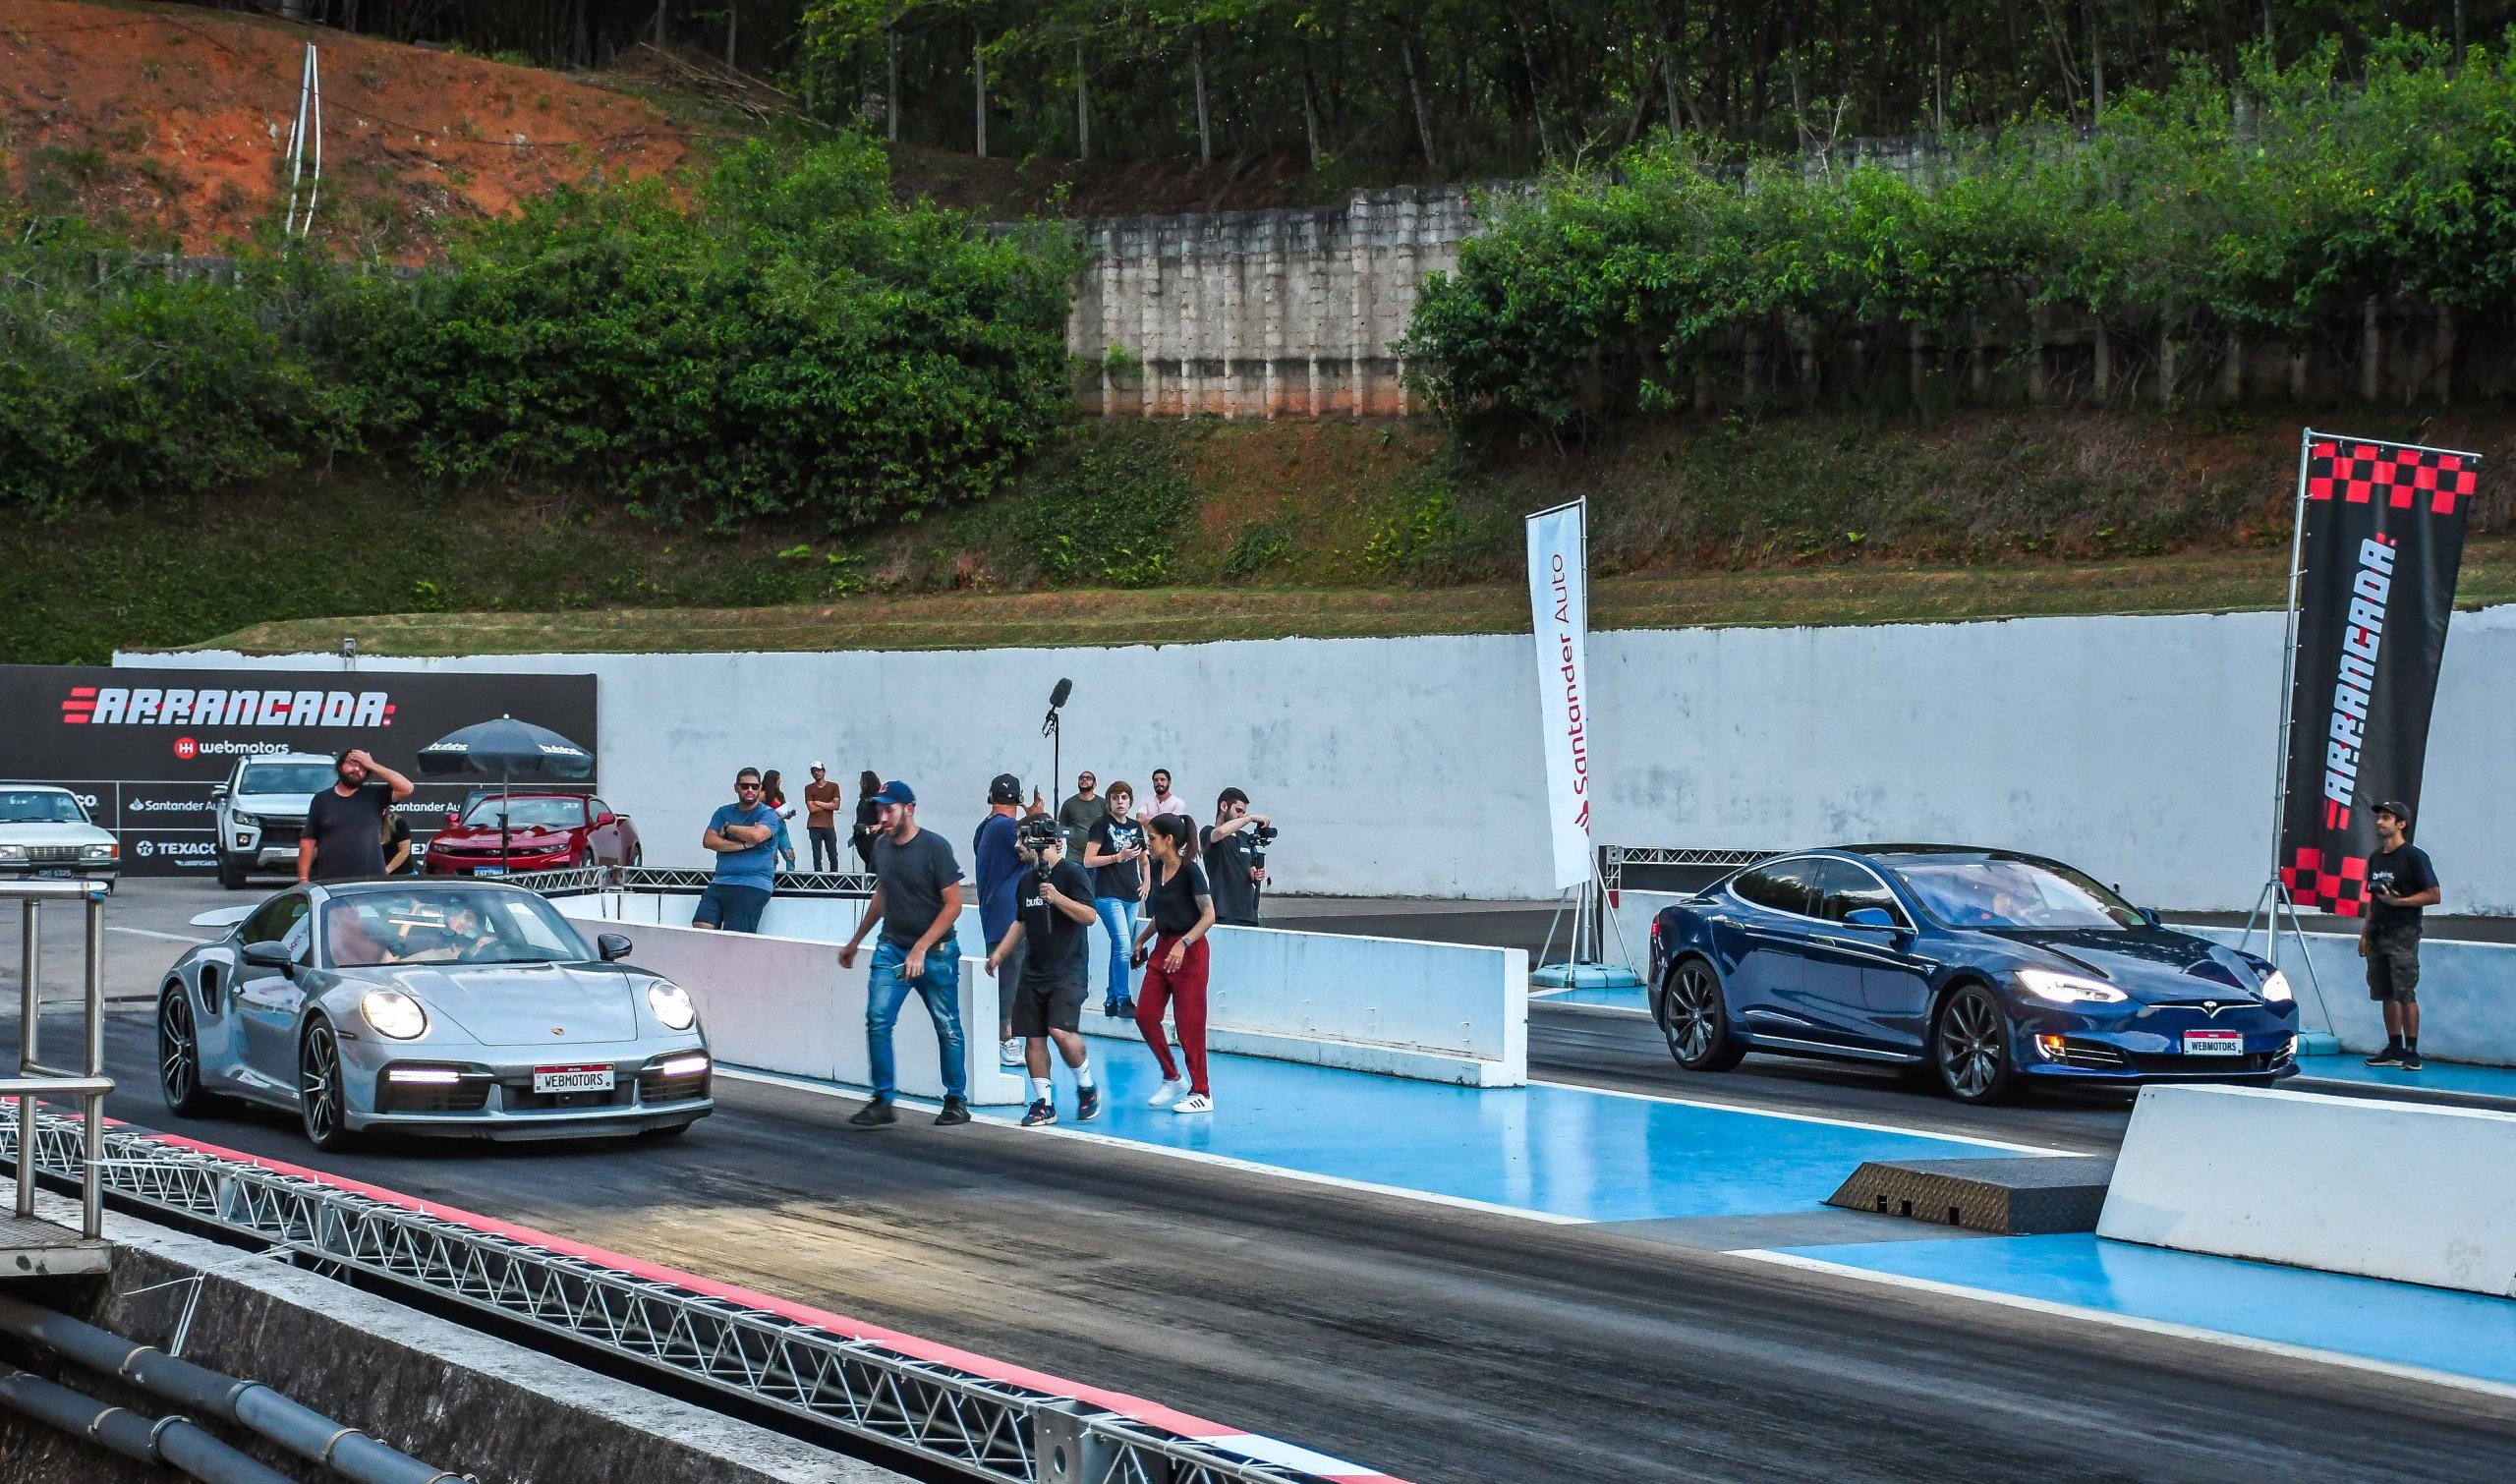 Evento Arrancada 6321 Tesla Model S x Porsche 911 Turbo S